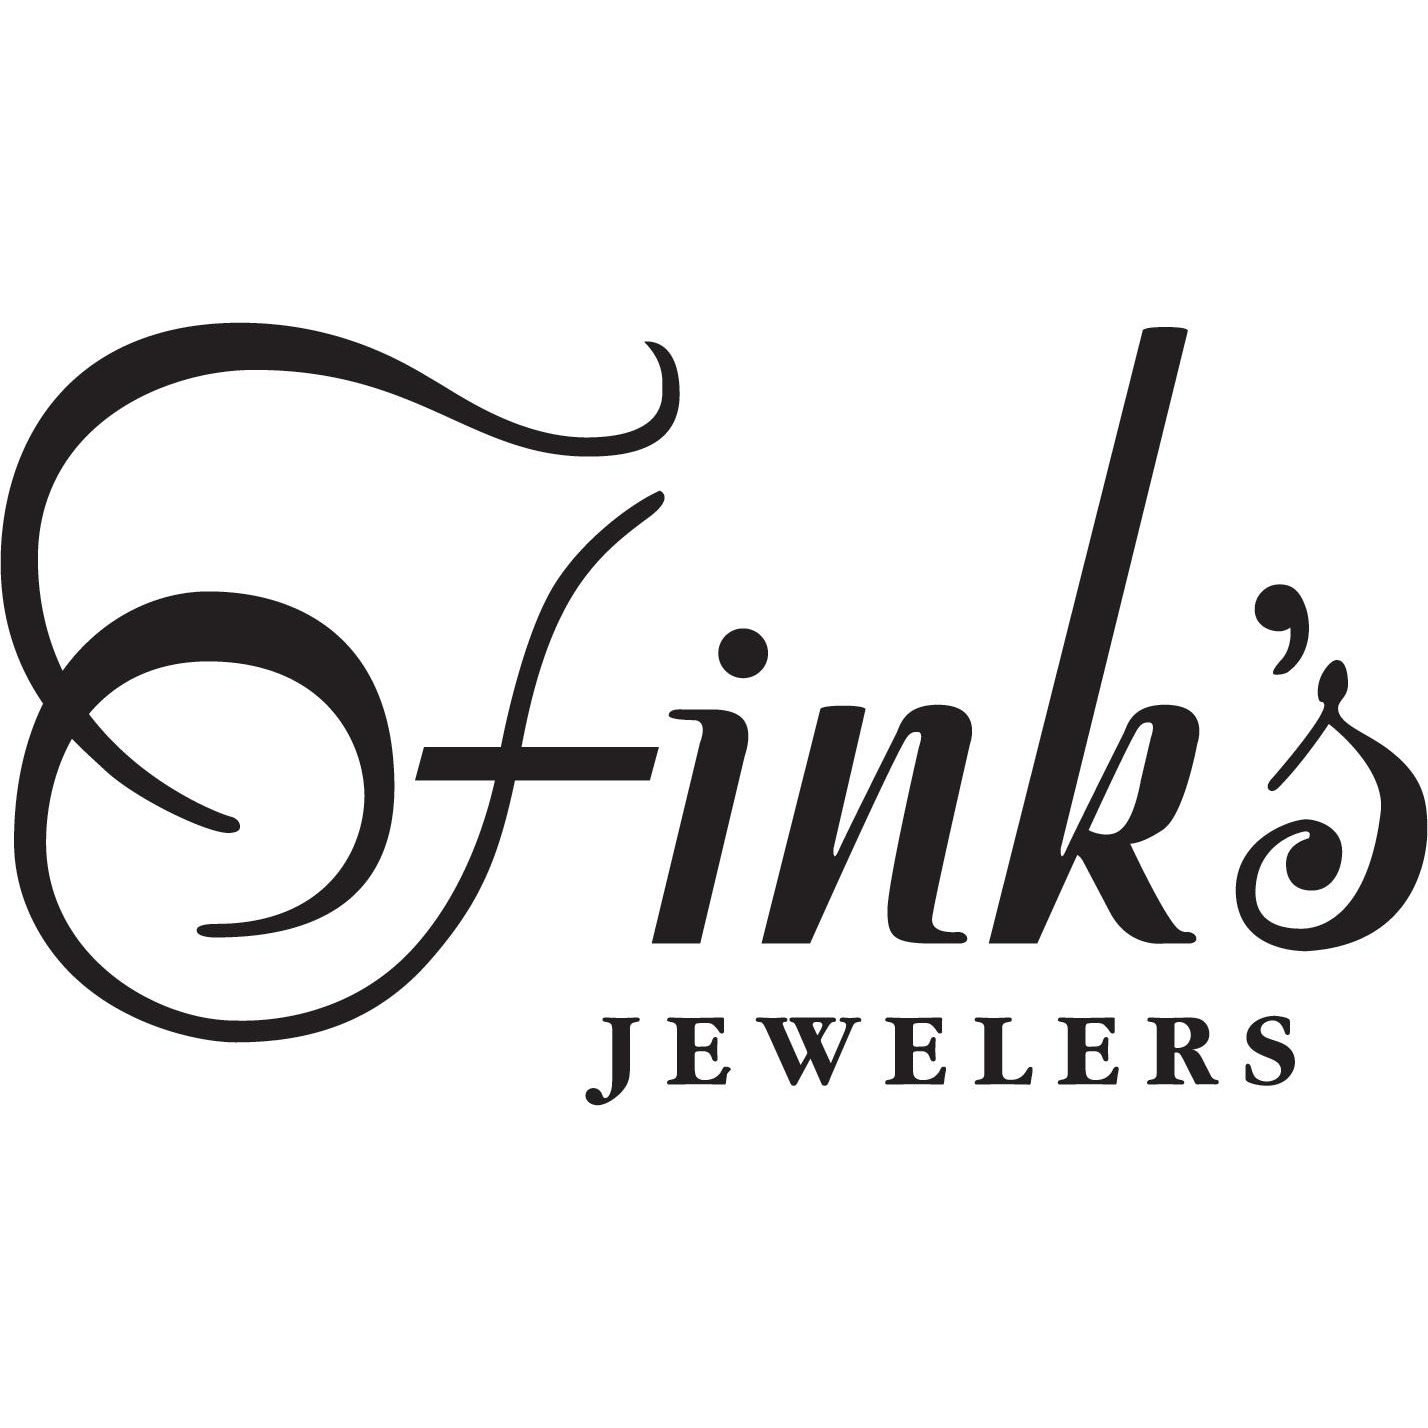 Fink's Jewelers (Formerly Rone Regency)